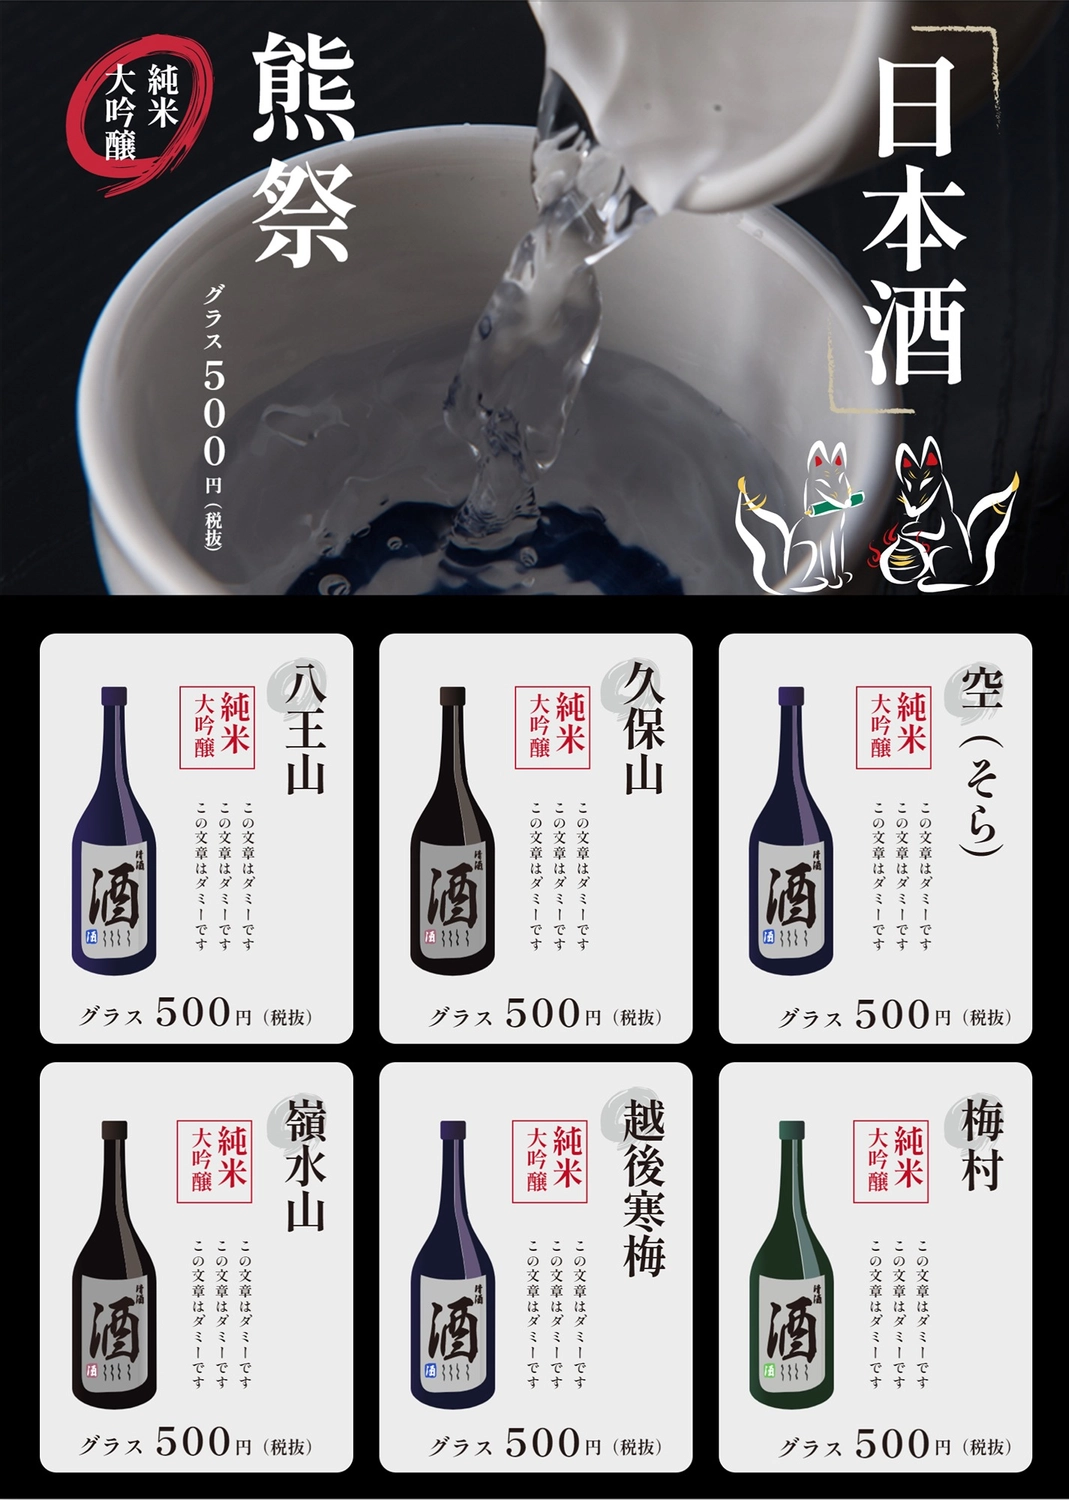 日本酒のメニュー, 바, 단순, 그리고, 메뉴 템플릿